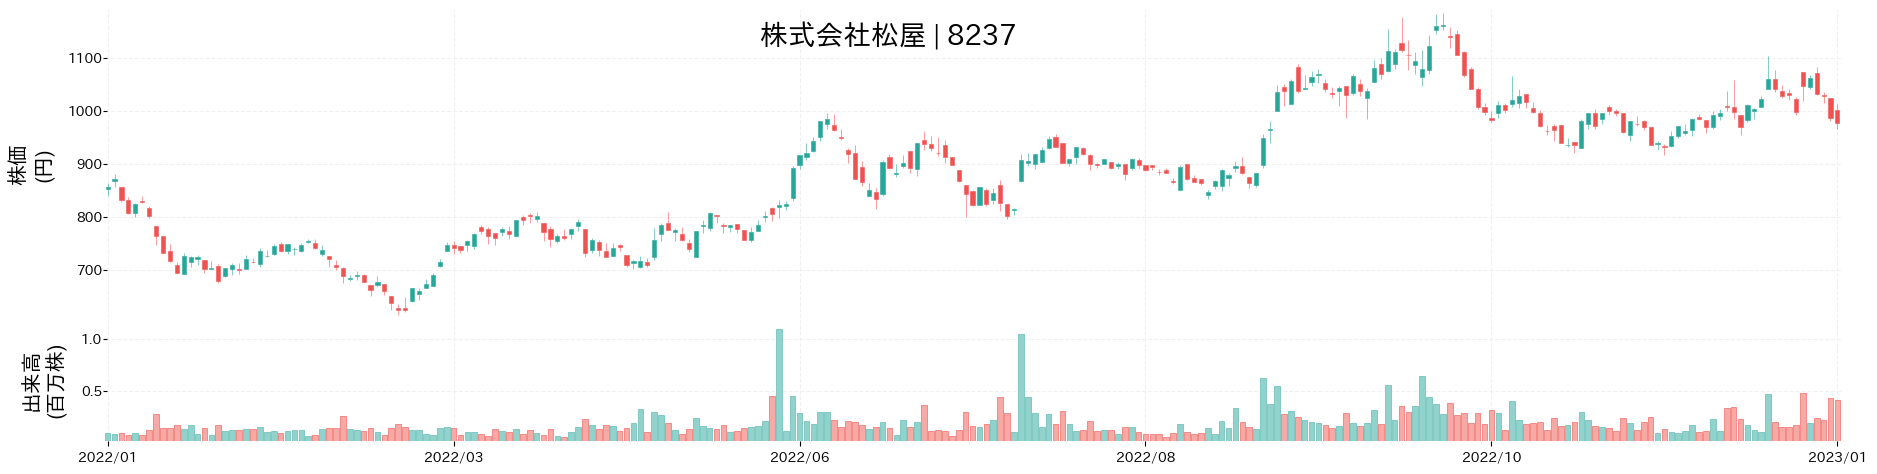 松屋の株価推移(2022)